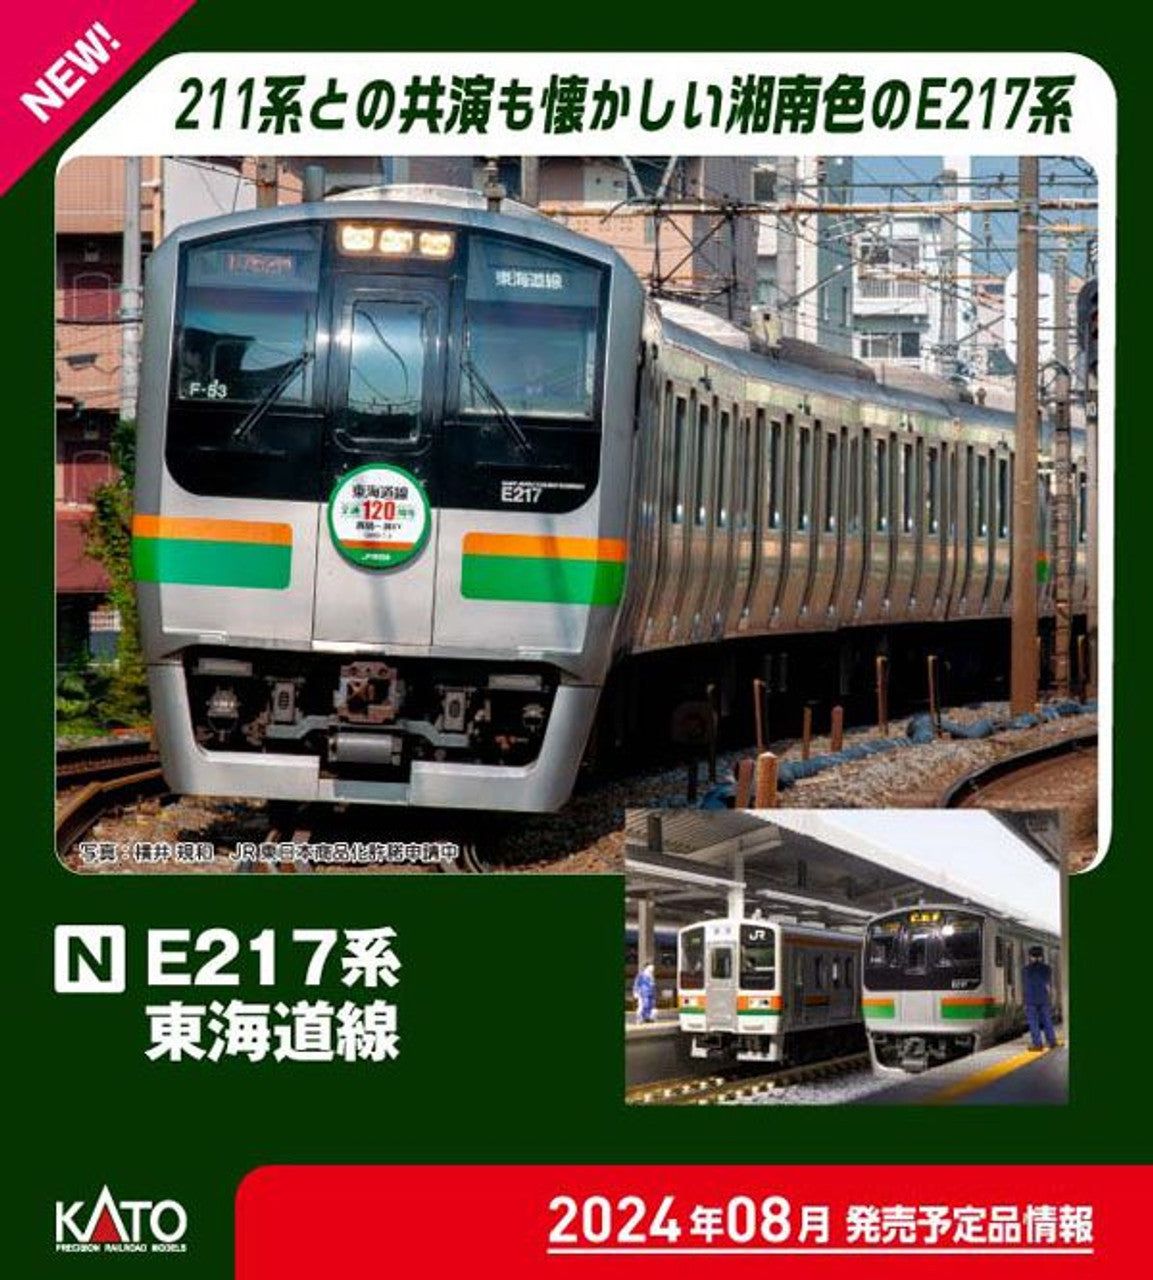 Kato 10-1643 Series E217 Tokaido Line 15 Cars Set (N scale) - BanzaiHobby